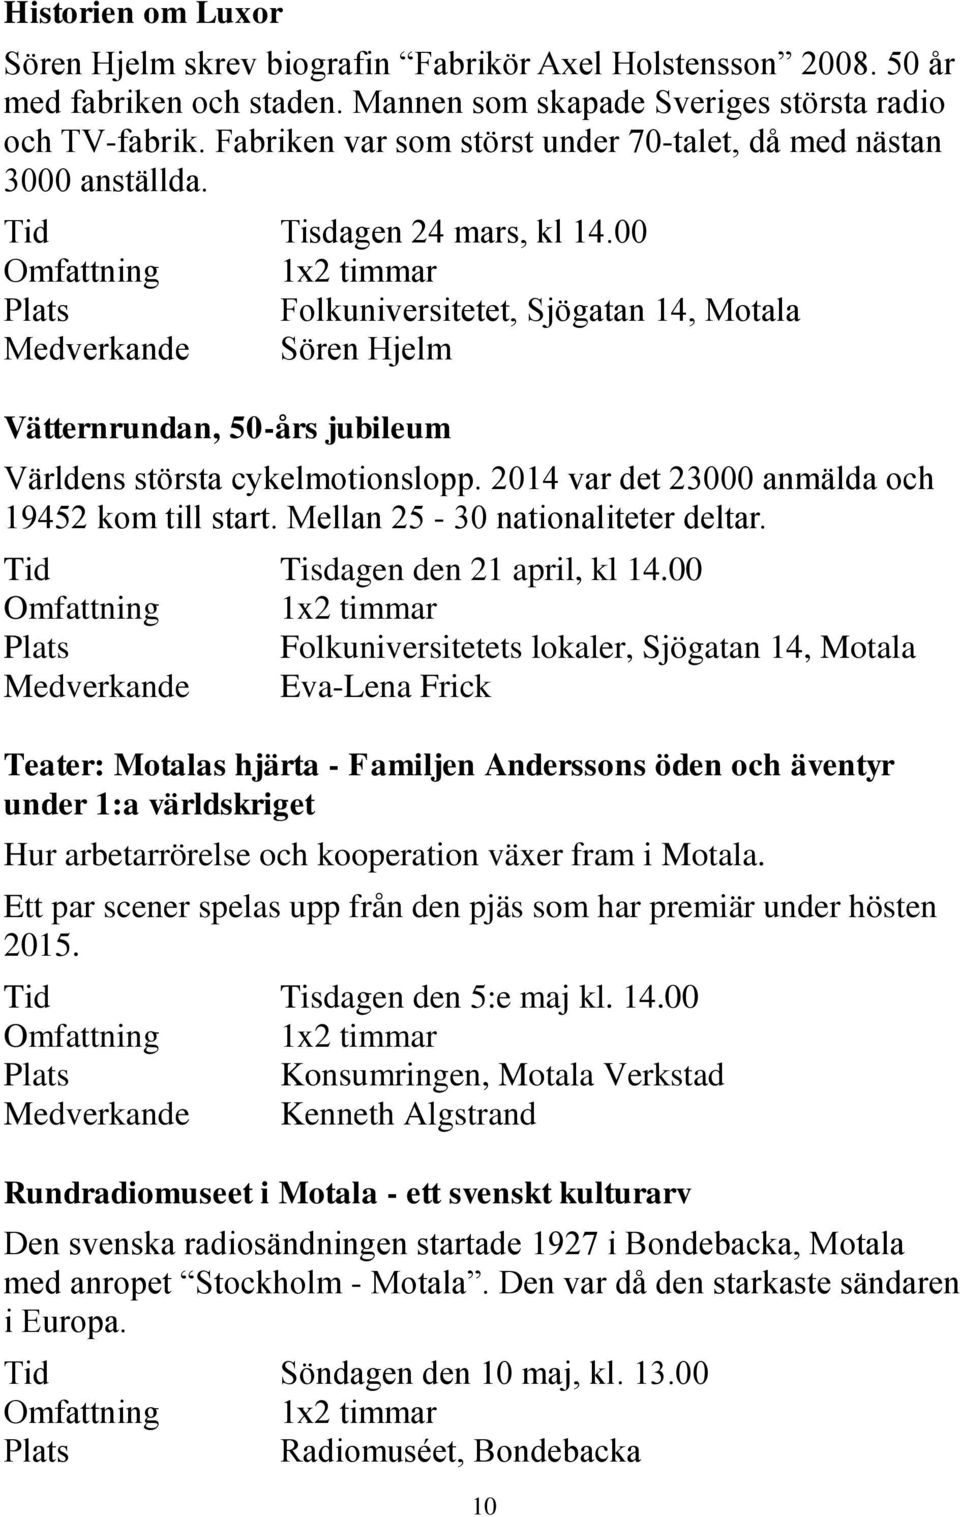 00 Omfattning 1x2 timmar Folkuniversitetet, Sjögatan 14, Motala Medverkande Sören Hjelm Vätternrundan, 50-års jubileum Världens största cykelmotionslopp.